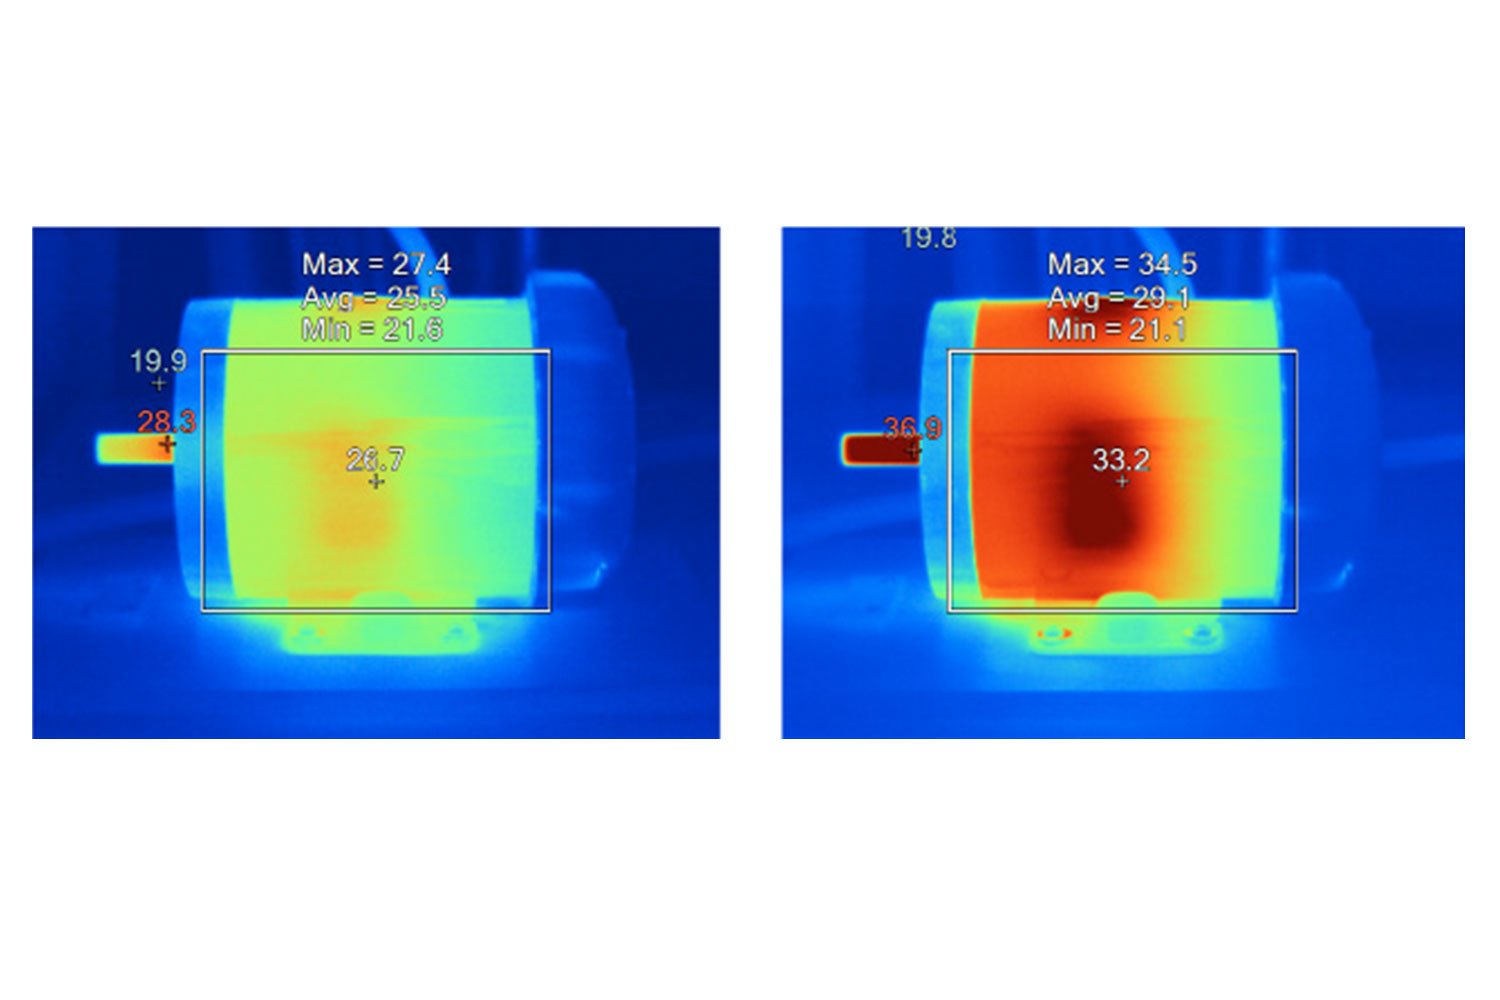 Imágenes térmicas comparando temperaturas de superficies de motores idénticos